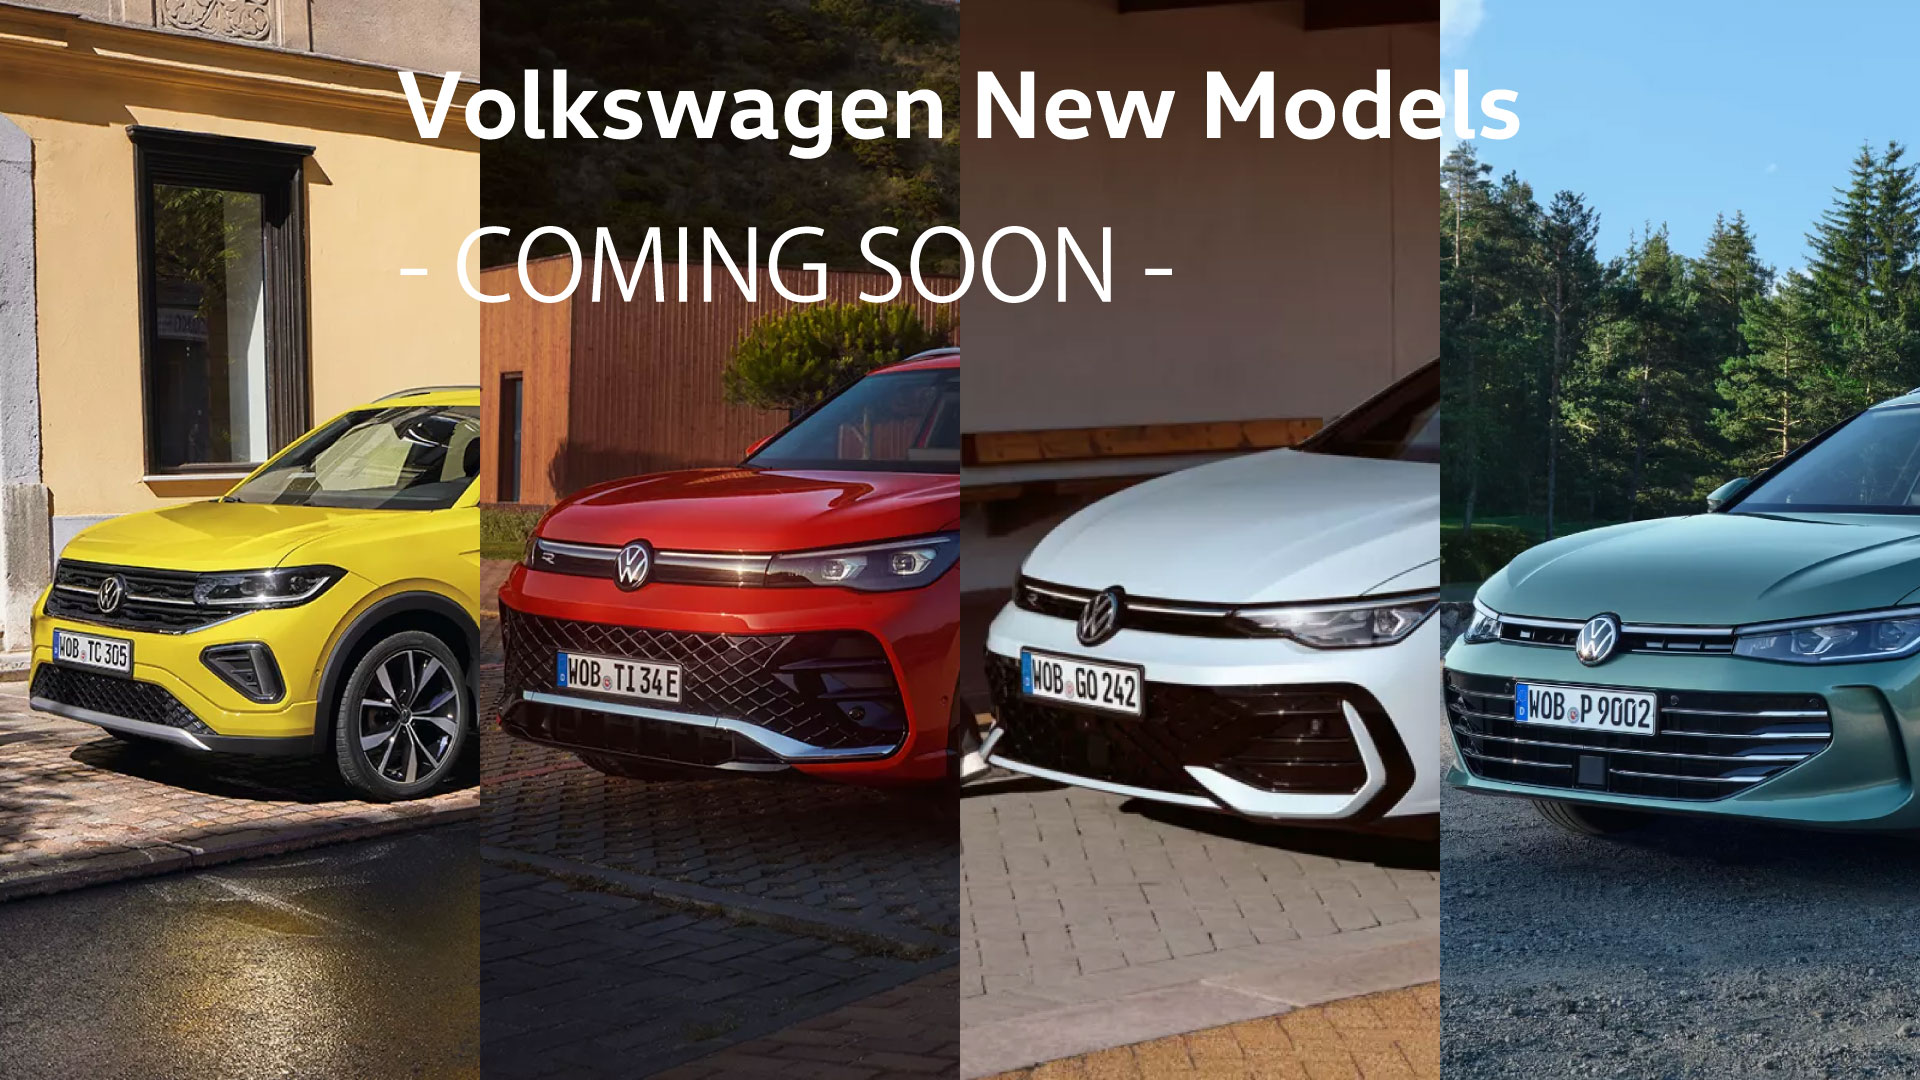 Volkswagen New Models -COMING SOON-